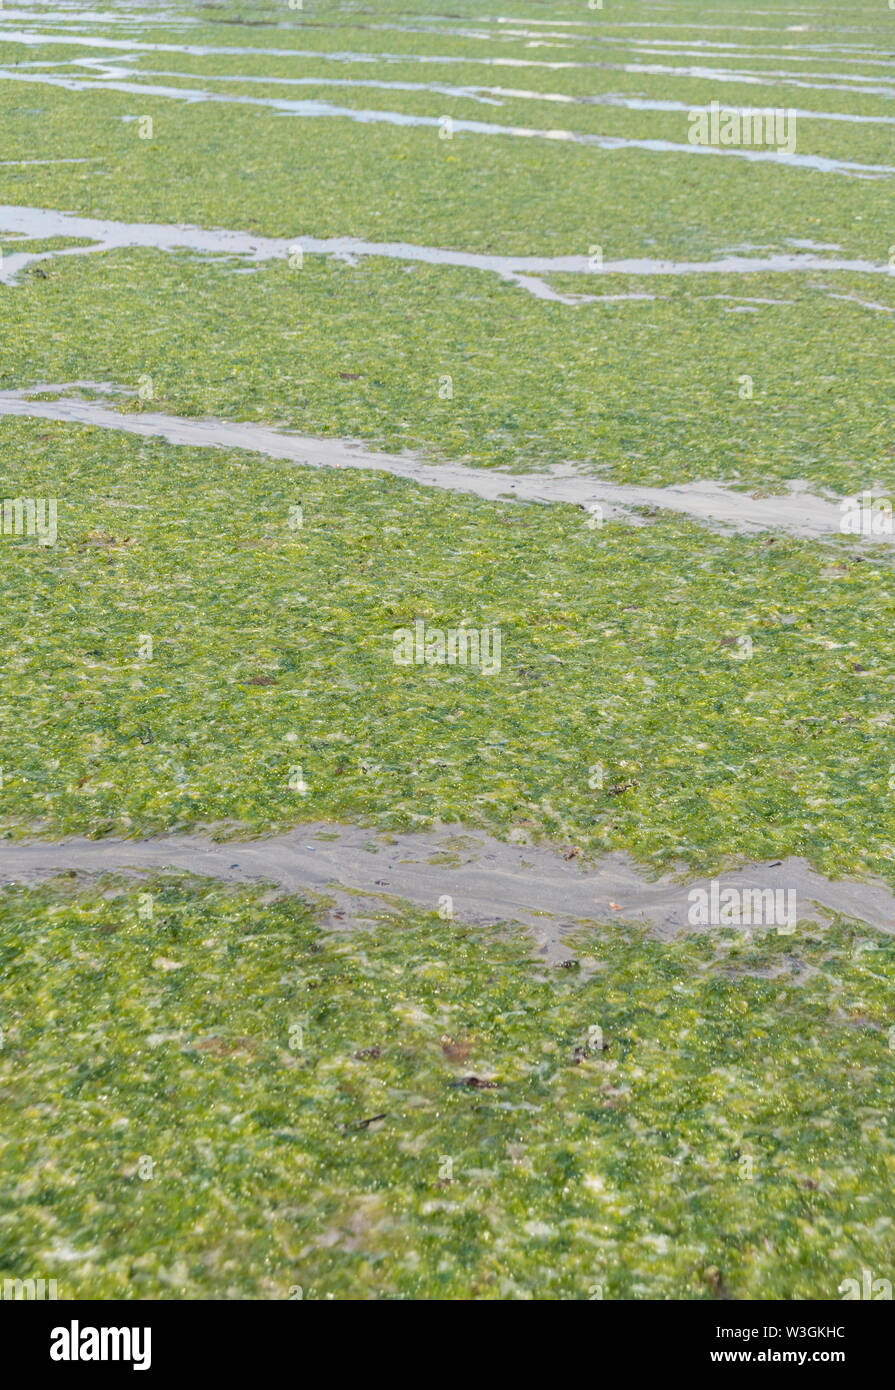 Litze grün Algen Sea Lettuce/Ulva lactuca gewaschen an Land, am Strand und im Drift Linie abgelegt. Angeschwemmte Metapher, gestrandete Konzept grüne Algen Stockfoto